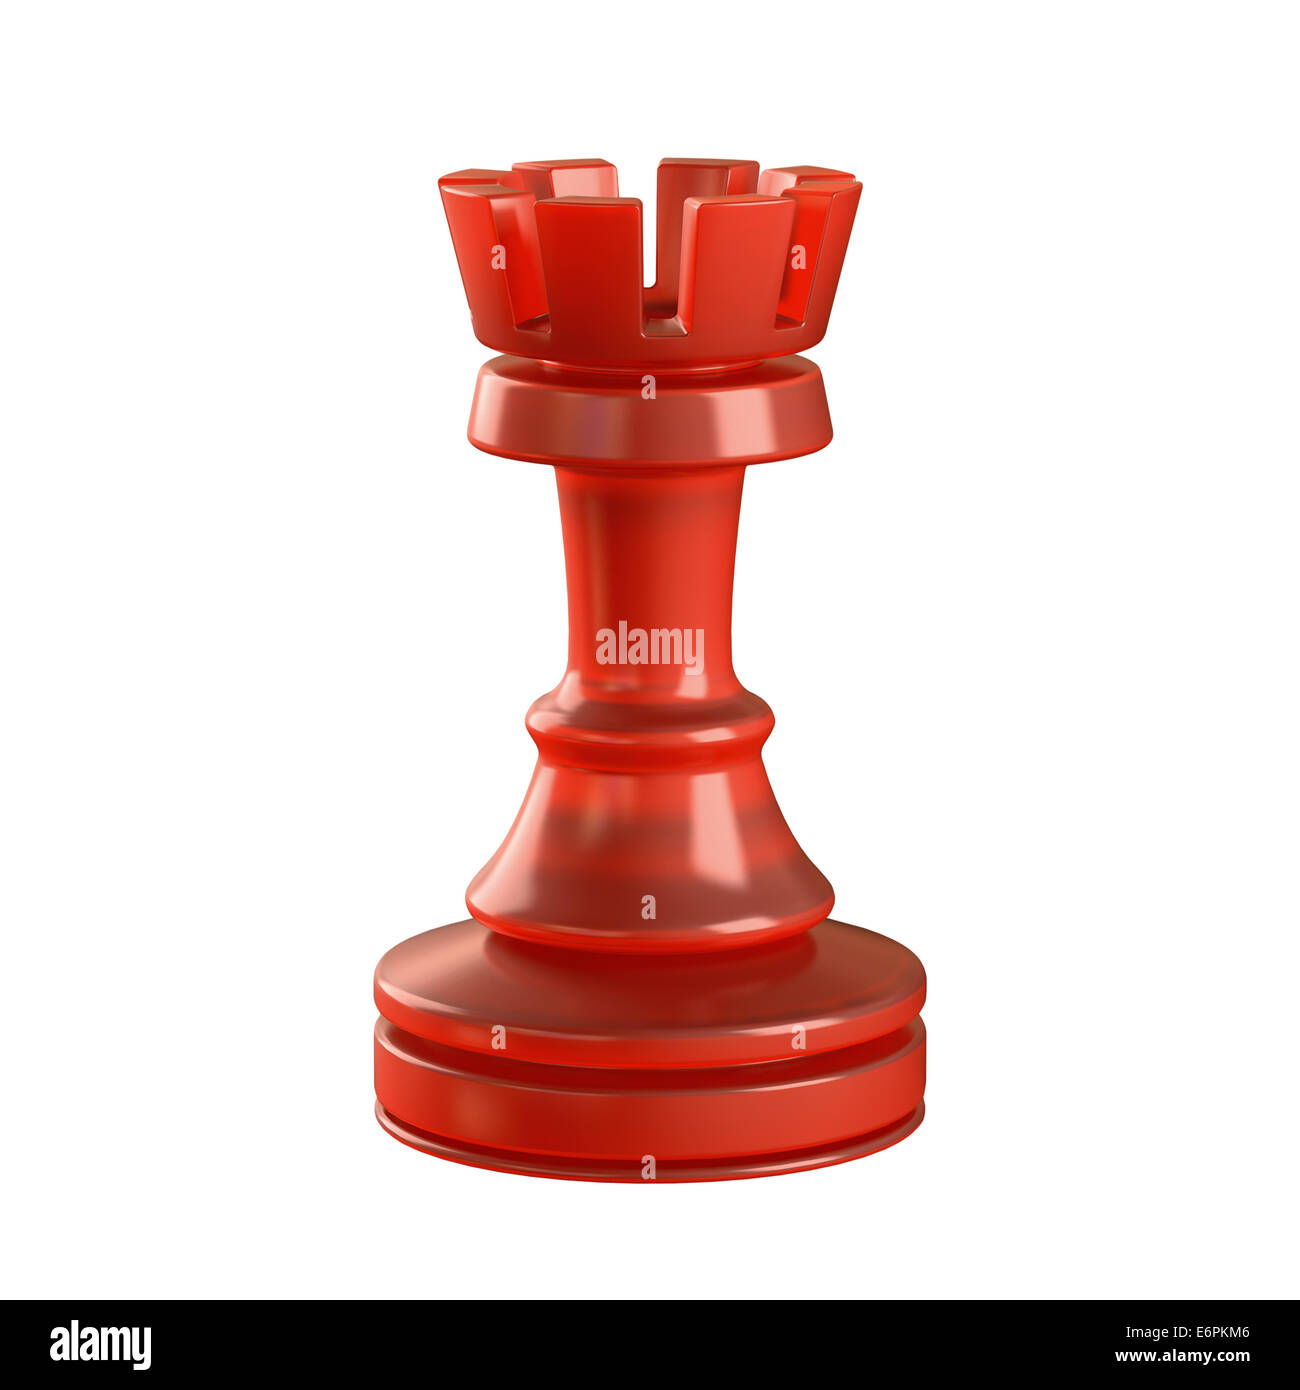 Pieza de ajedrez de cristal rojo aislados. Trazado de recorte incluido. Foto de stock